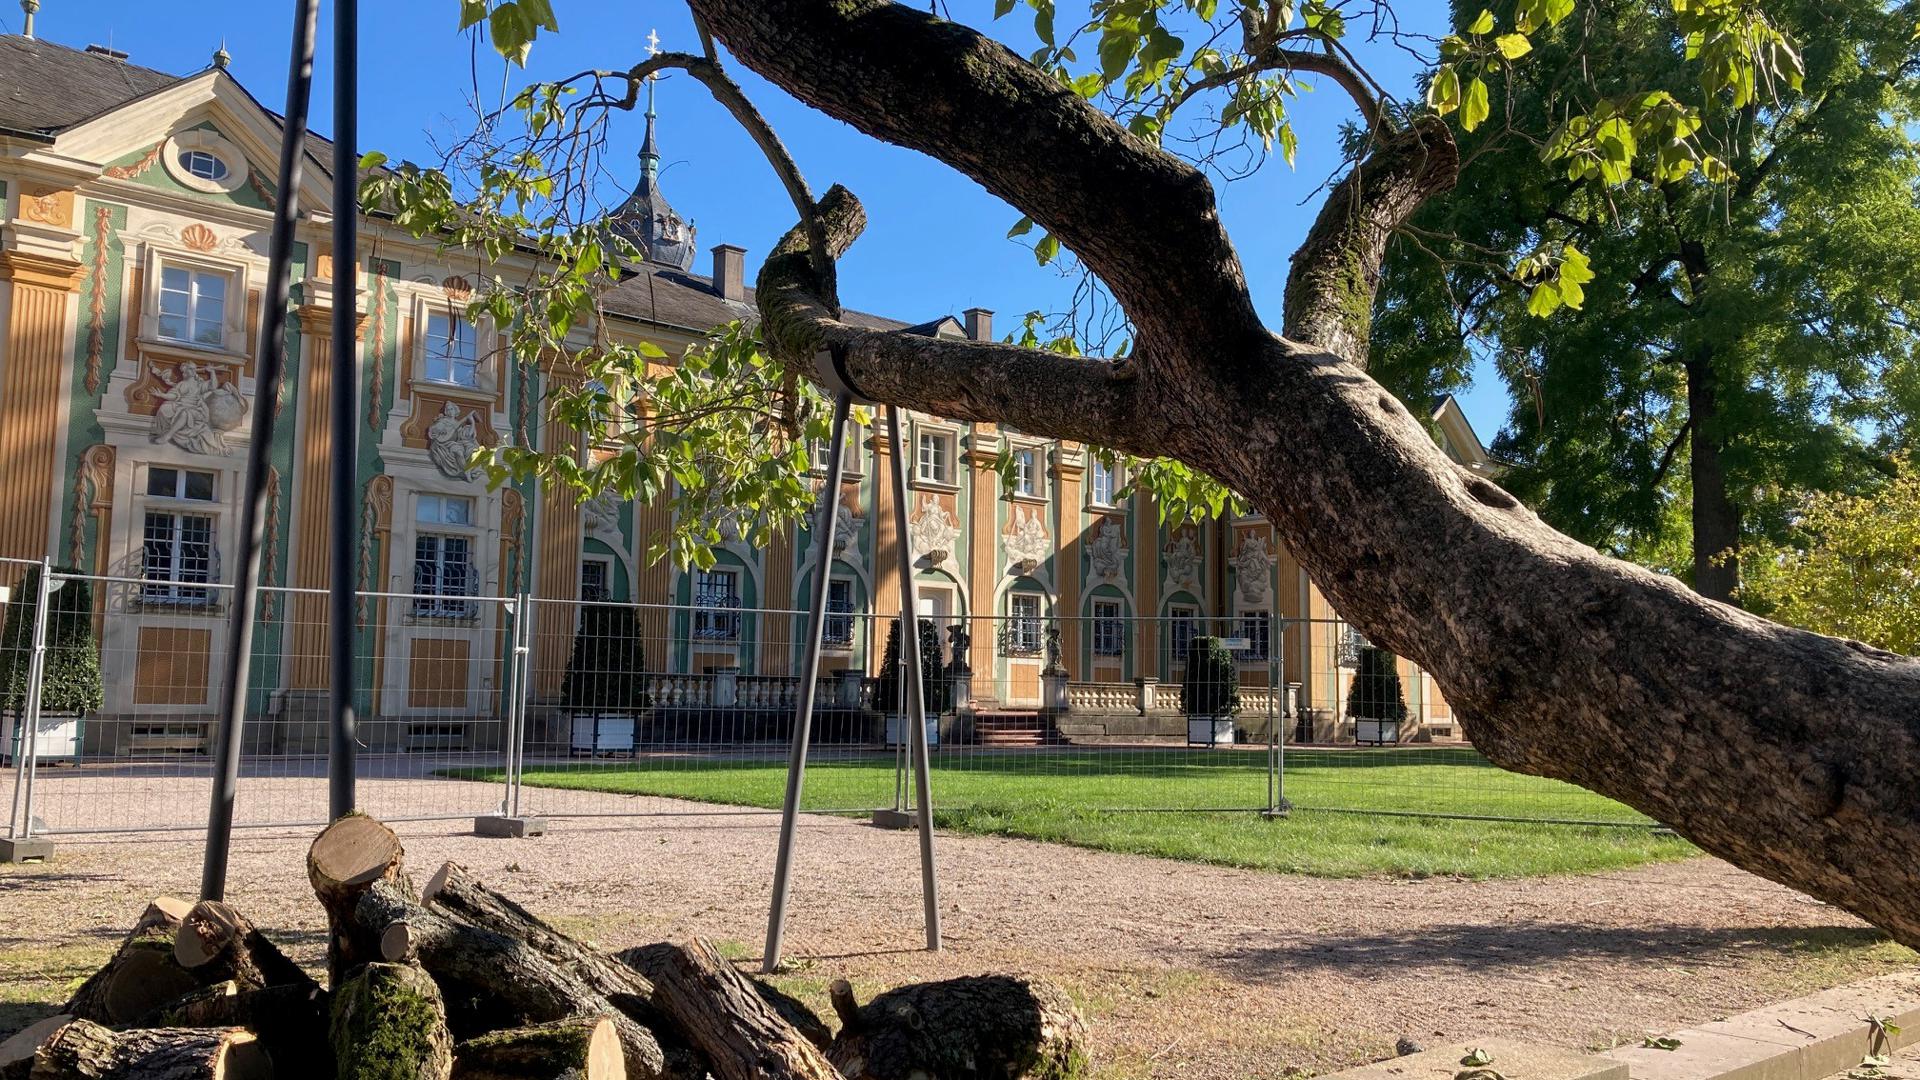 Beschnitten wurde der Trompetenbaum im Schlosspark Bruchsal. Seit Jahrzehnten ist er als Kletterbaum beliebt. Das hat dem Baum arg zugesetzt. 